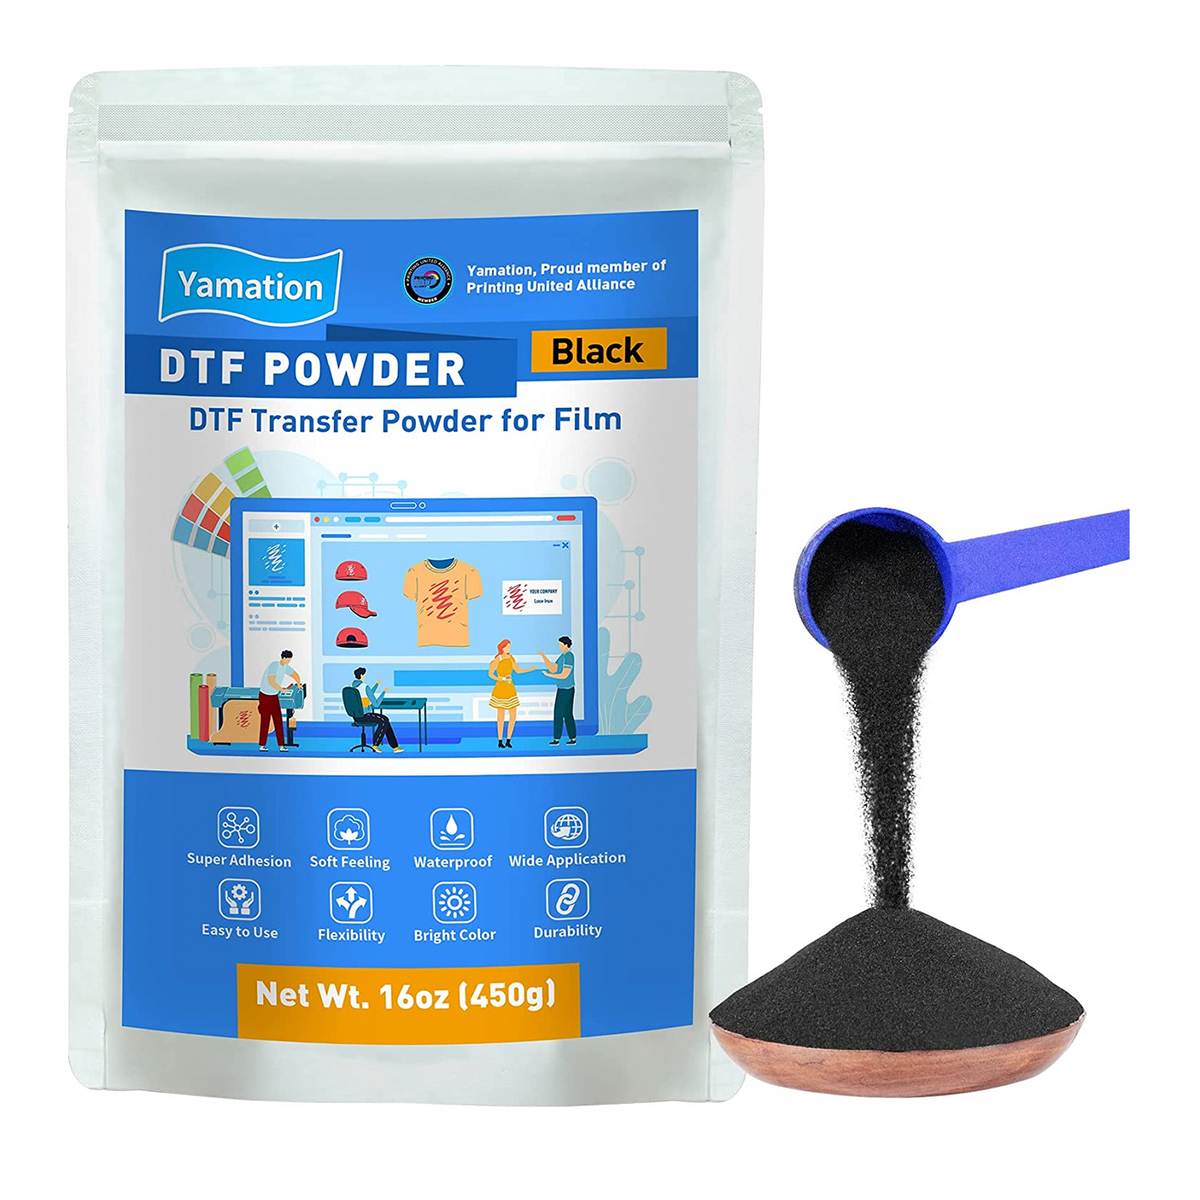 DTF Transfer Medium Powder  High-quality powder for transferring